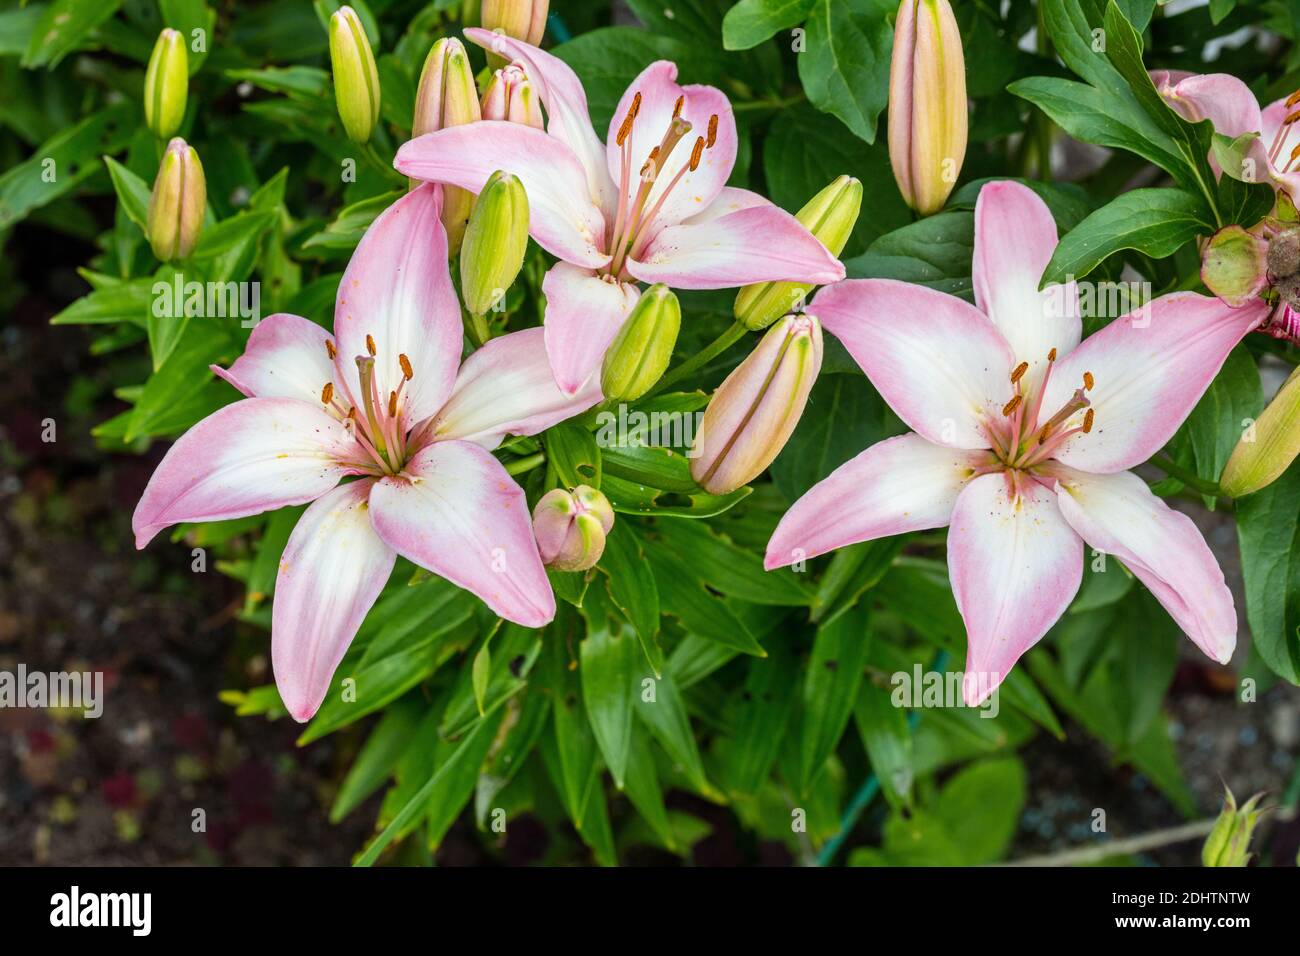 LALLYPOP, Lily pop asiatique, lilja asiatique (Lilium spp.) Banque D'Images